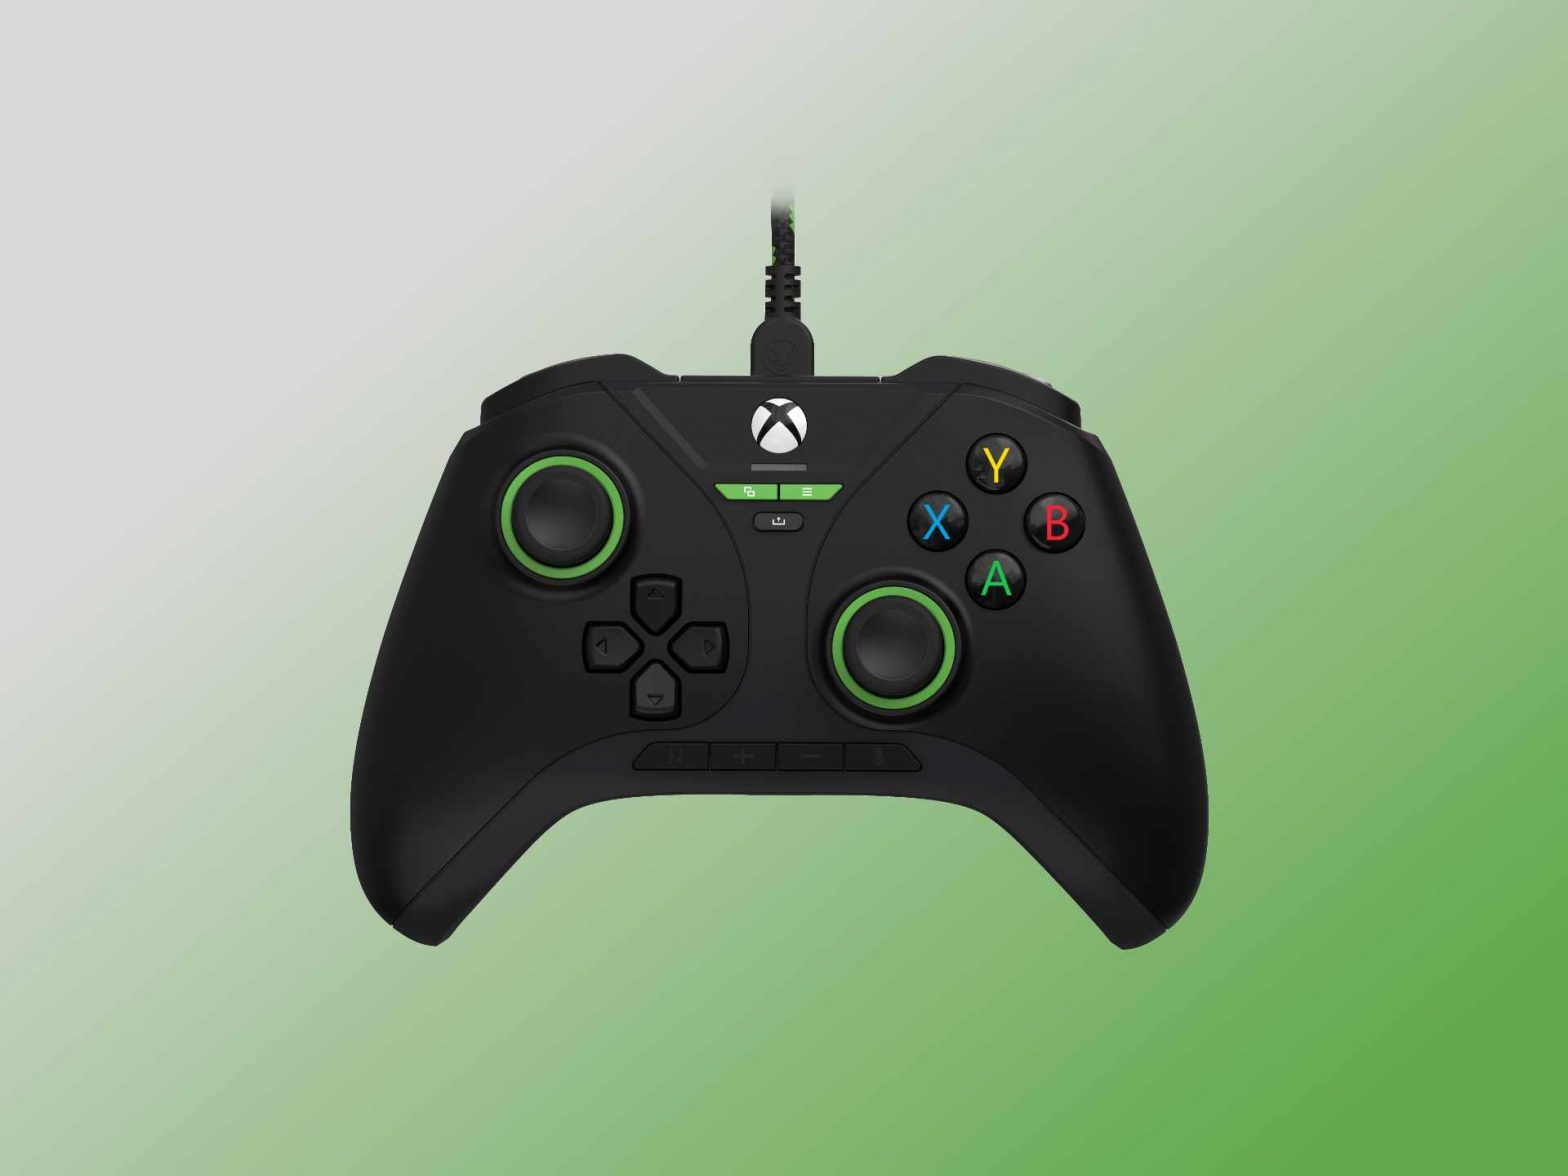 snakebyte stellt mehrere Xbox-Controller mit Hall-Effekt-Sensoren vor